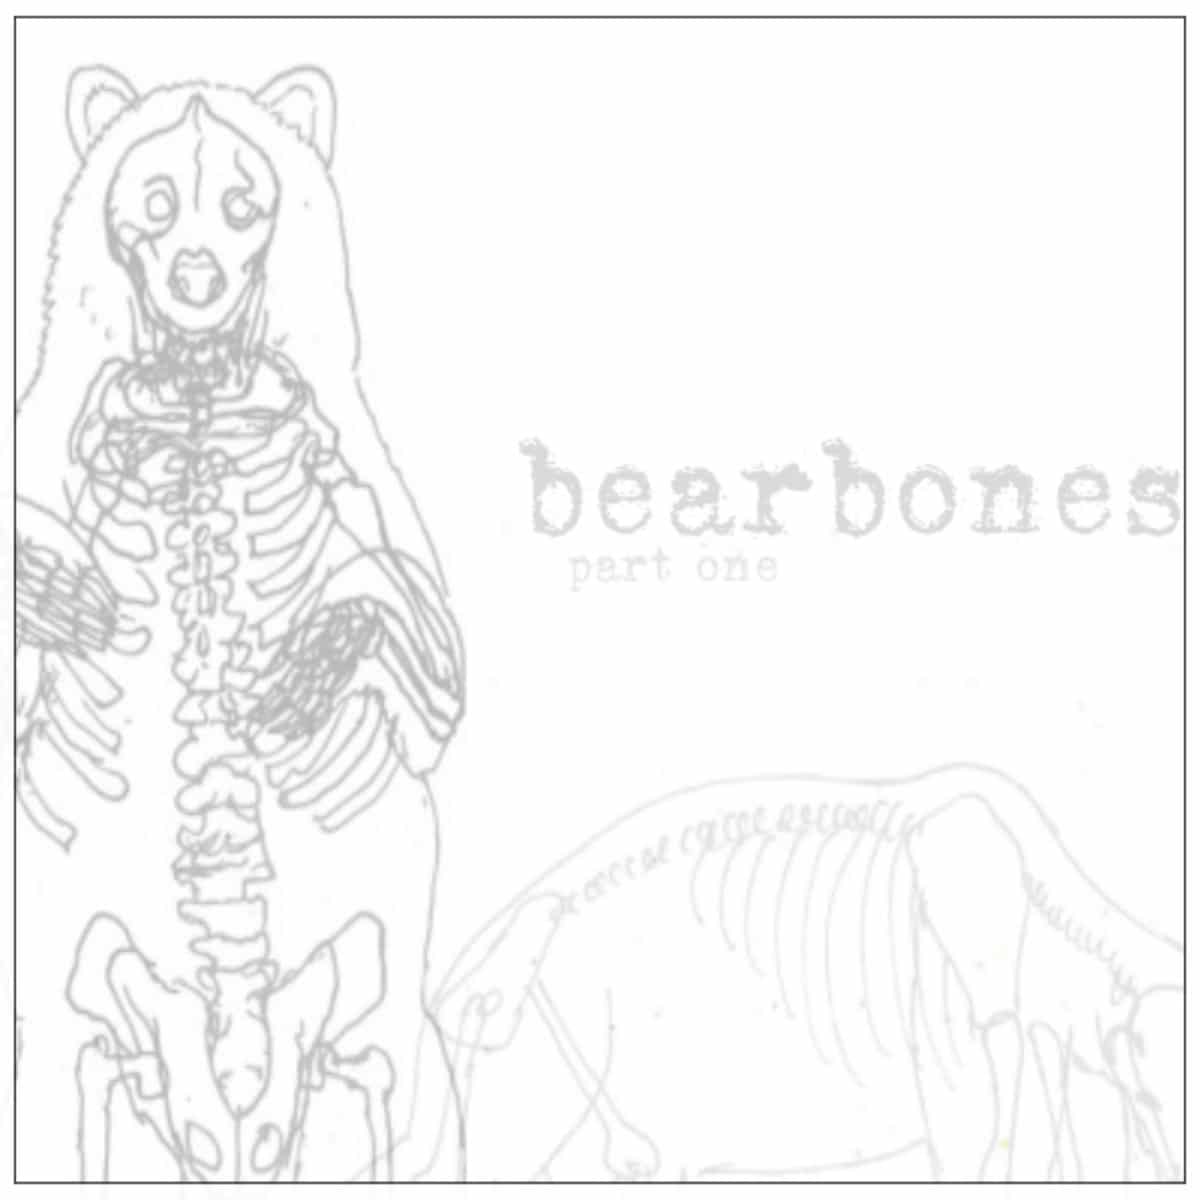 Grxzz - "BEARBONES" (Release)